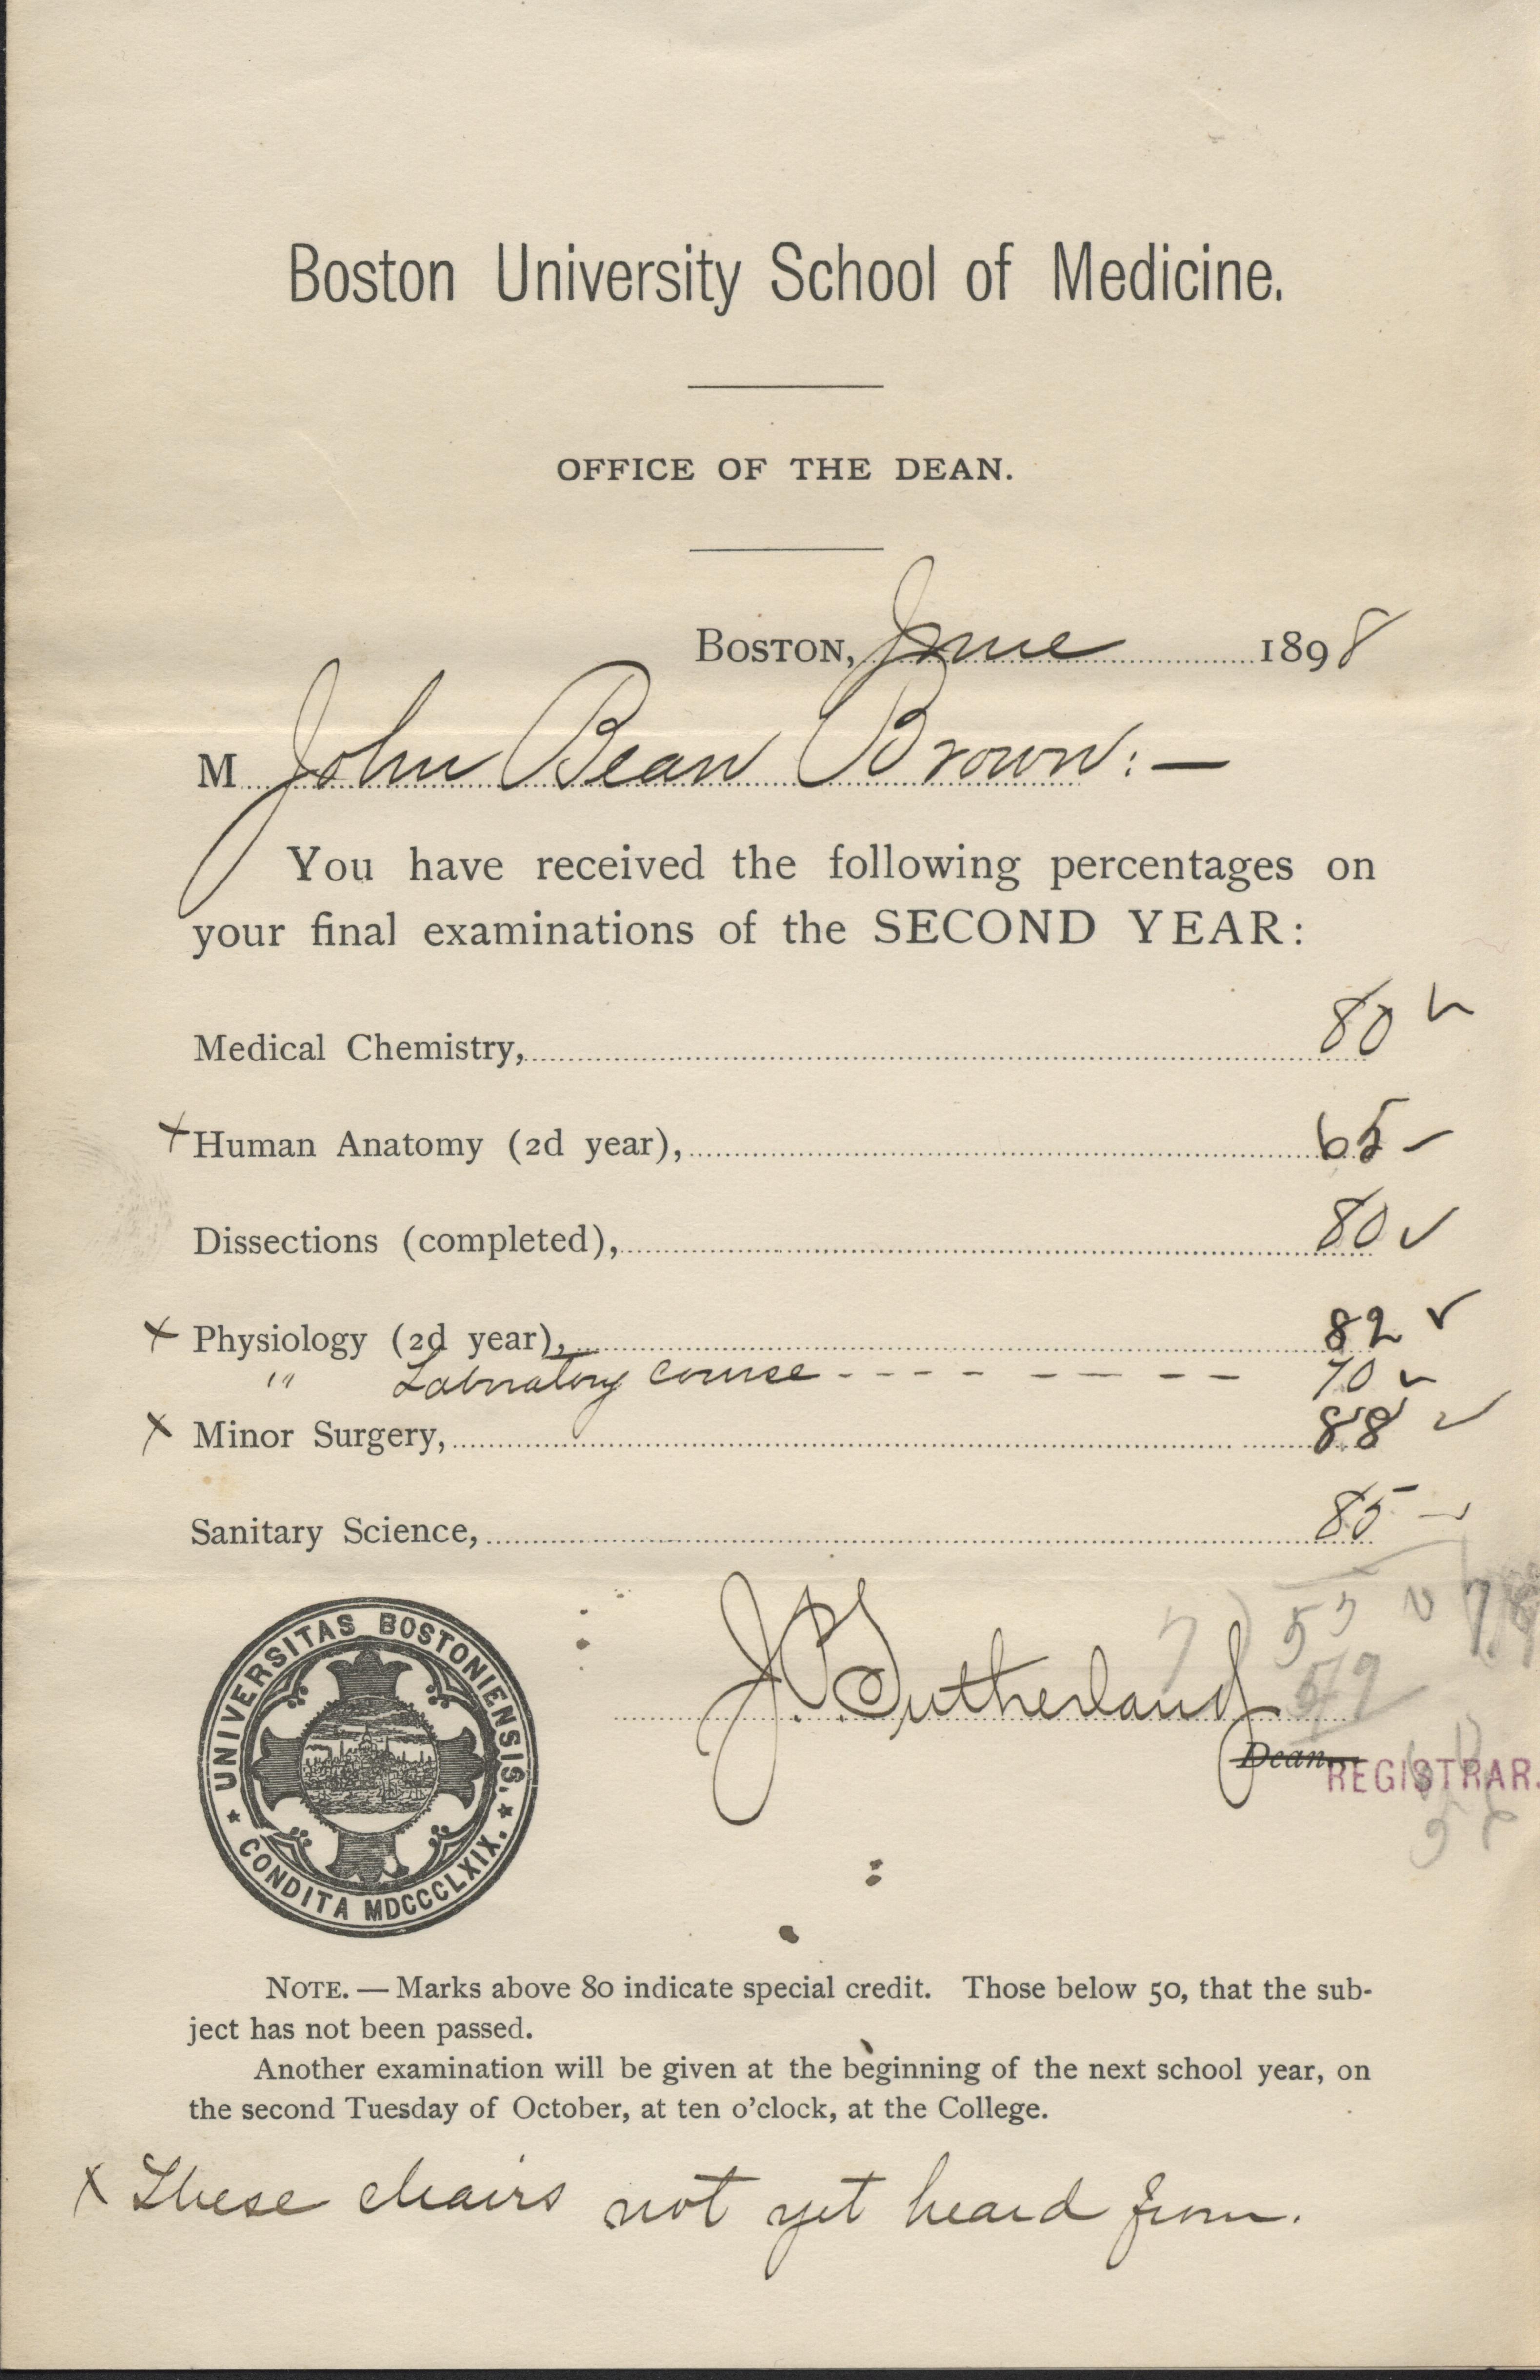 JBB 1898 Report Card